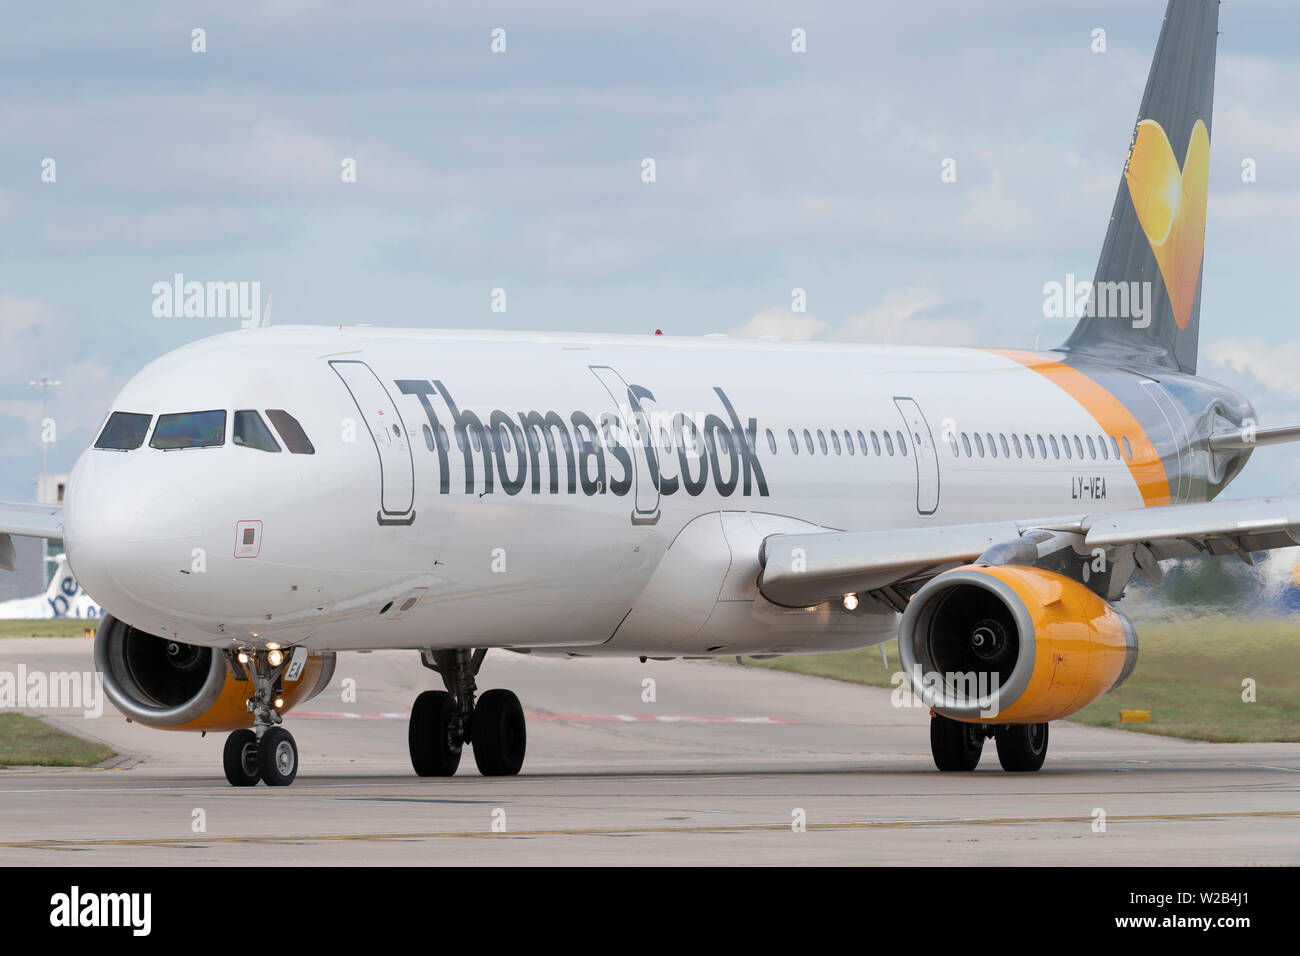 Thomas Cook un Airbus A321-200 Les taxis sur la piste à l'aéroport de Manchester, Royaume-Uni. Banque D'Images